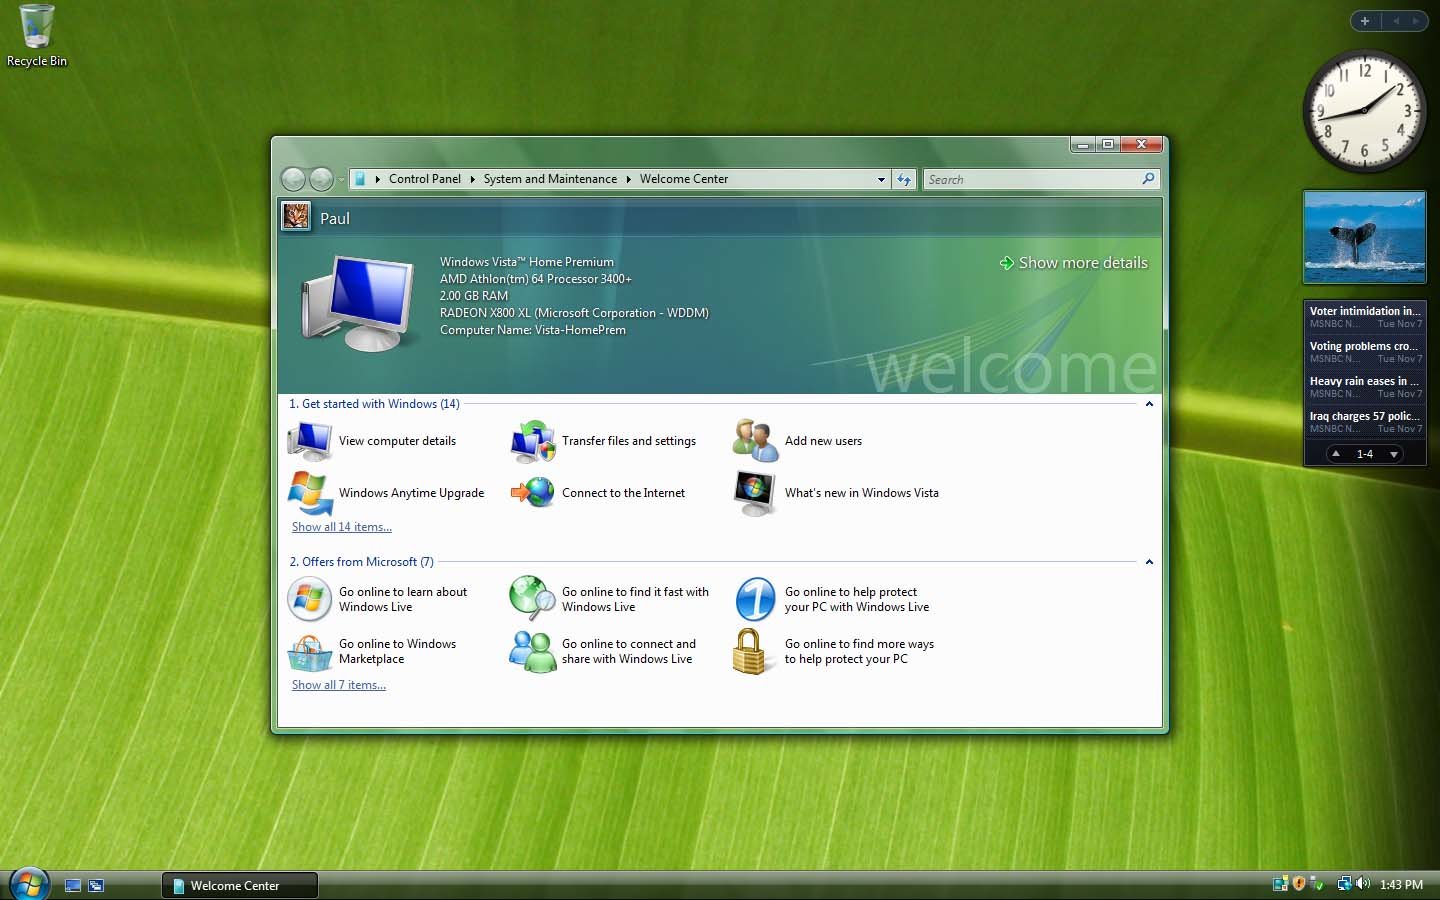 Windows Vista Home Premium